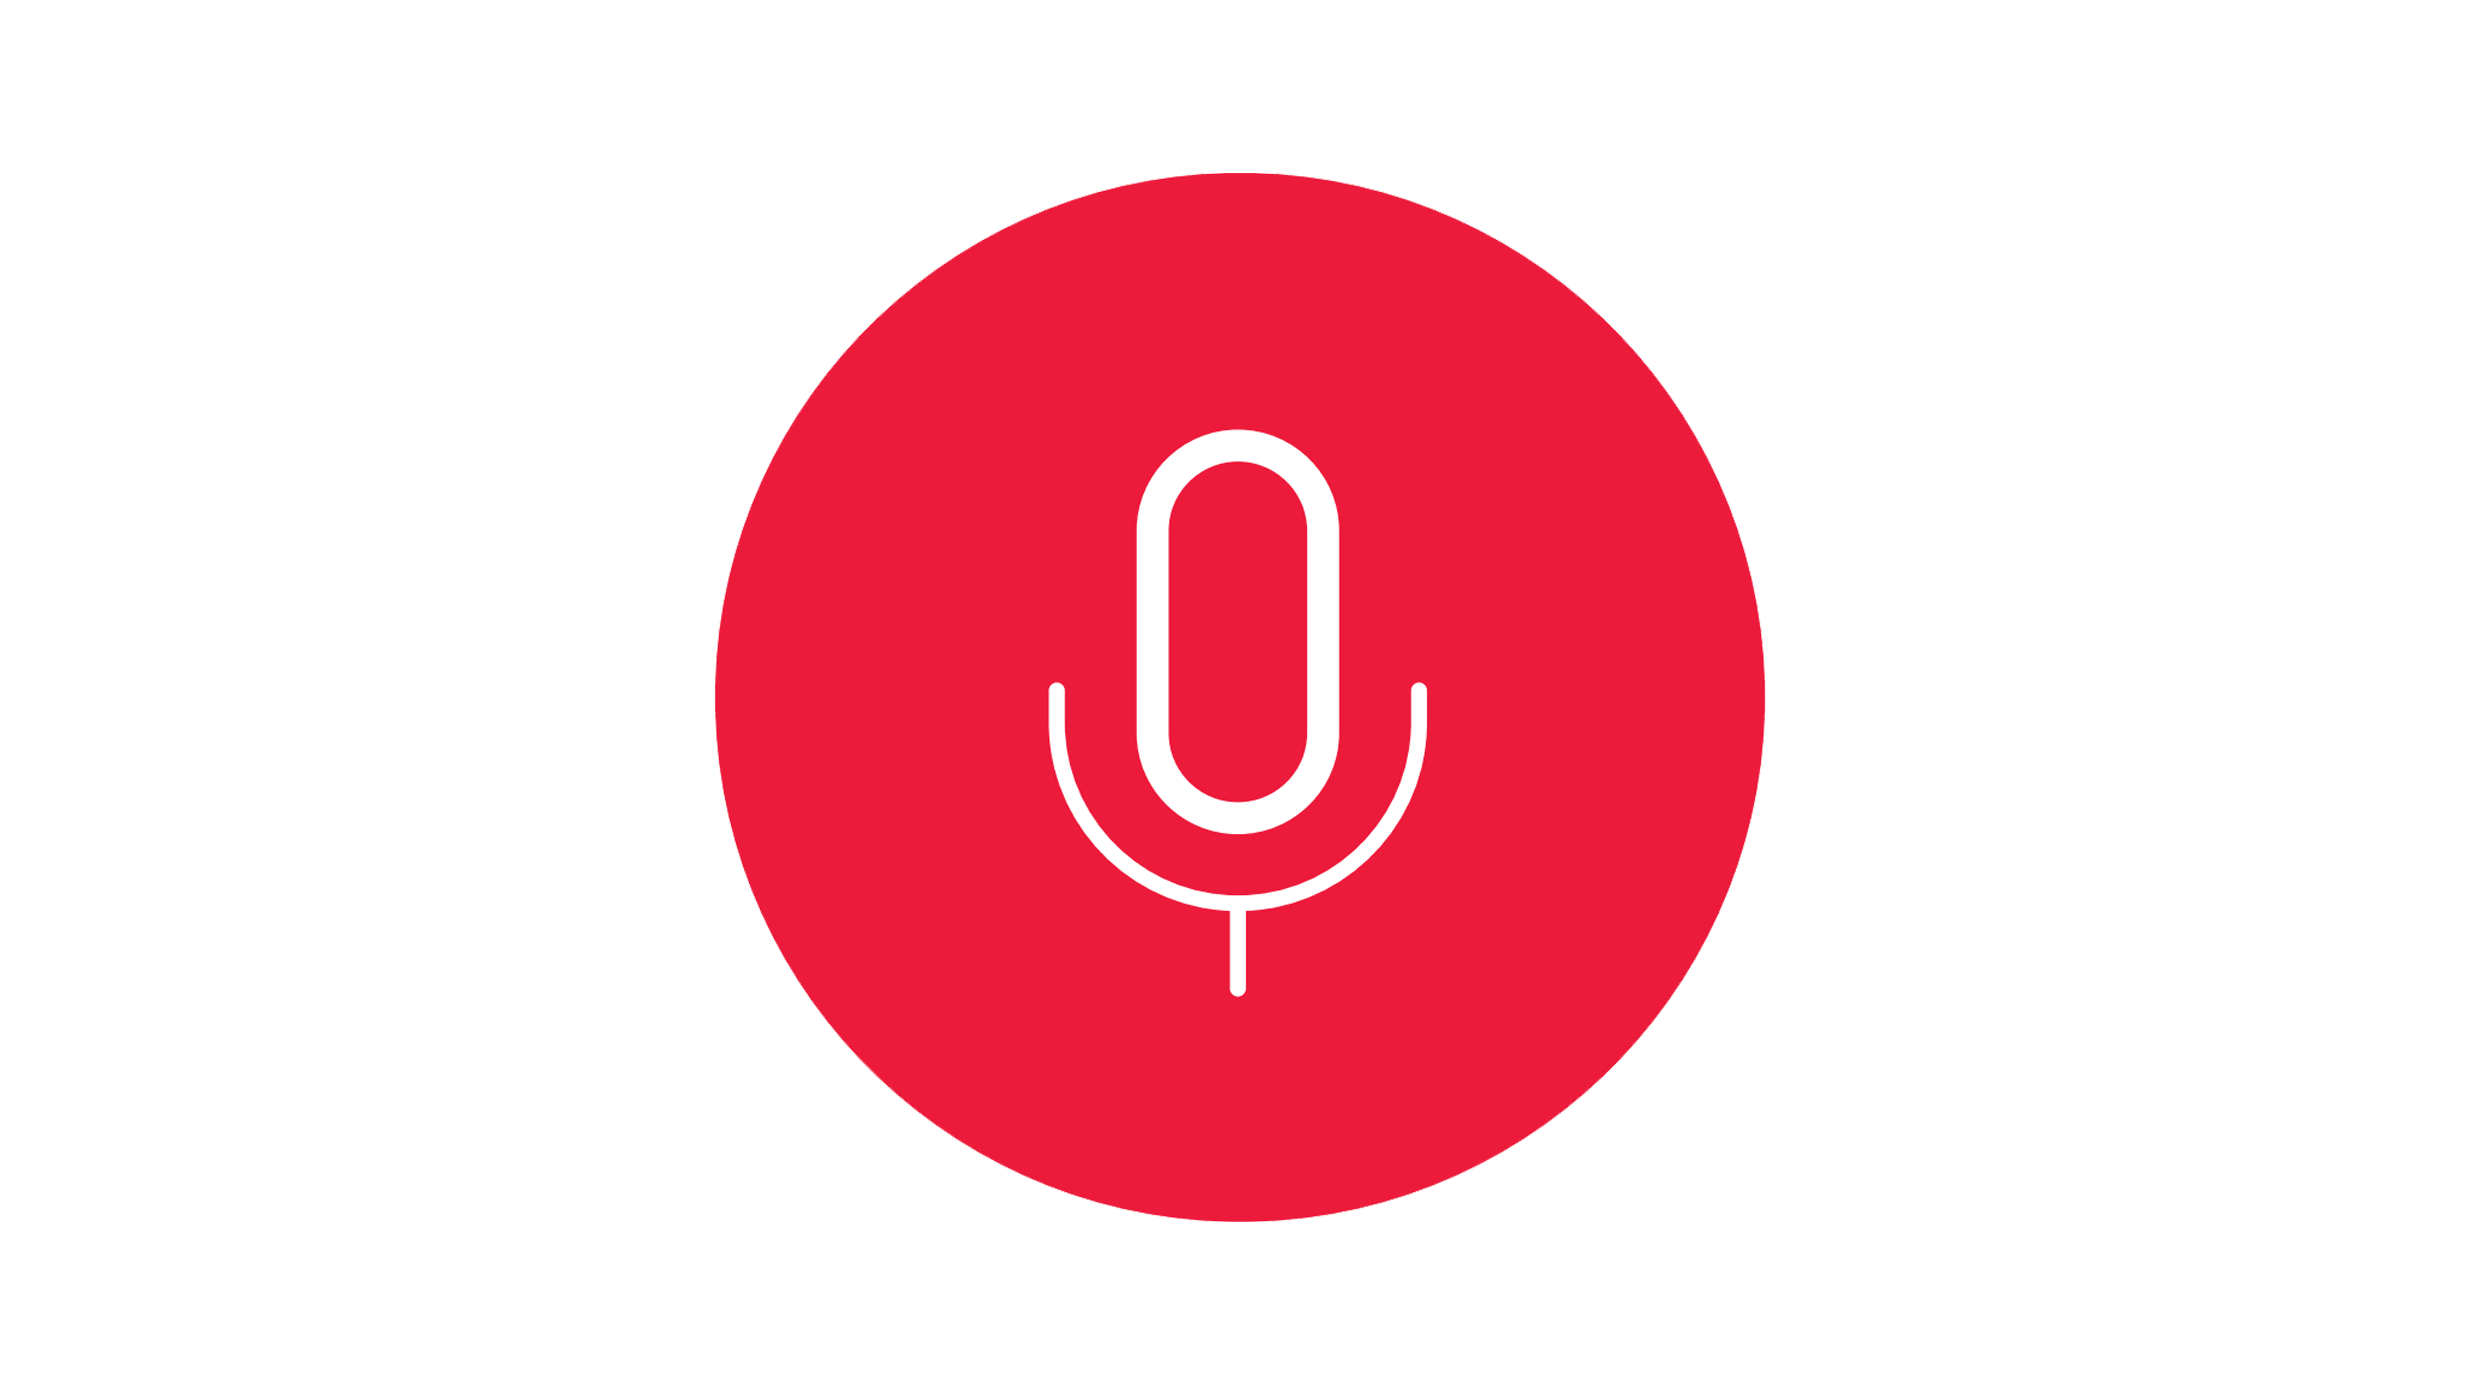 Ein rotes Icon, das ein Mikrofon darstellt. Es symbolisiert das Hören von Podcasts und ist ein bekanntes Symbol für die Welt der Audioinhalte.